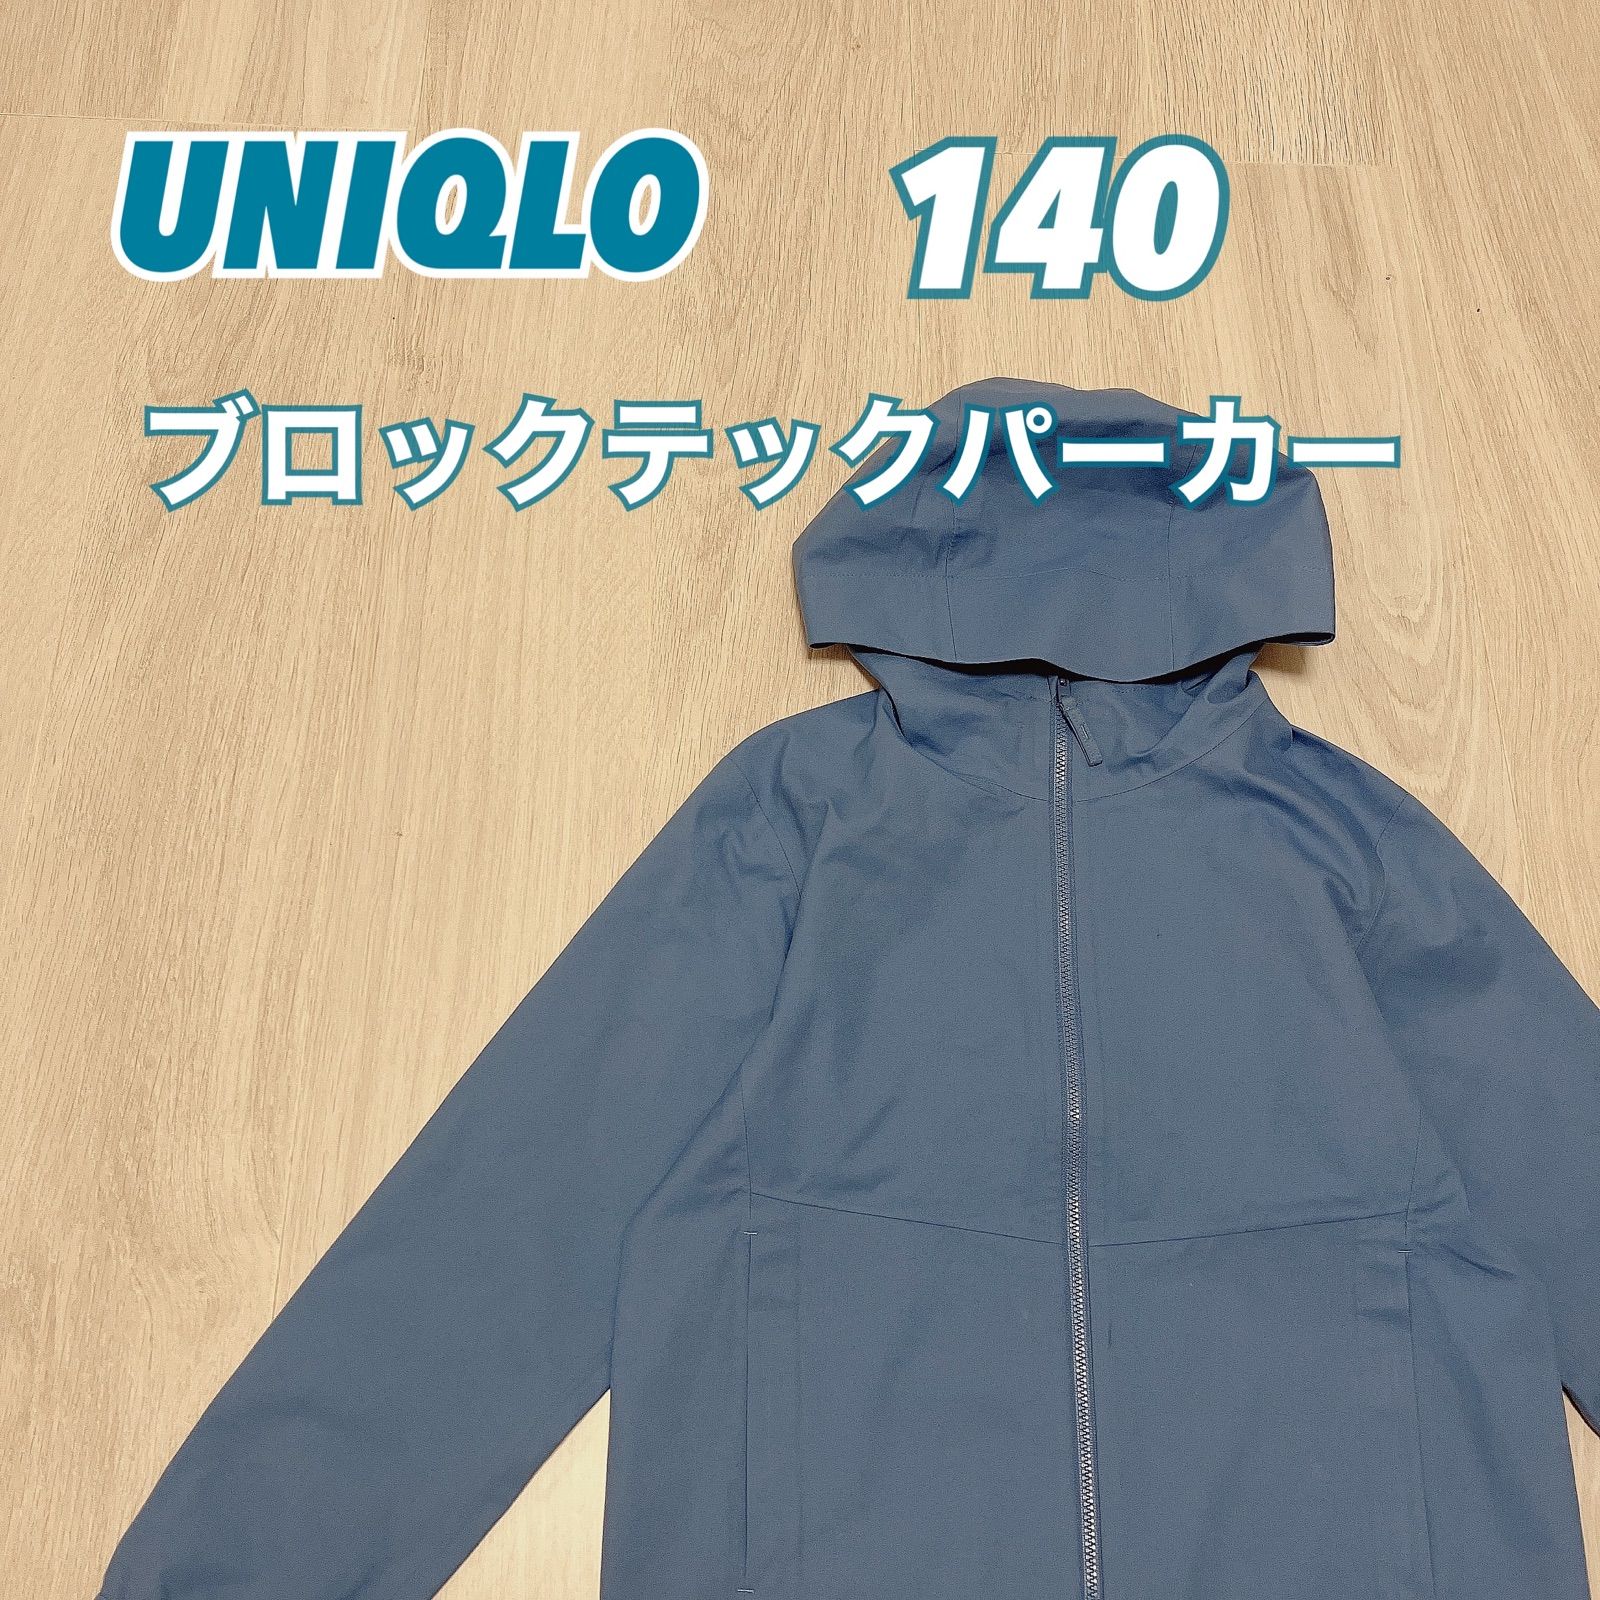 UNIQLO ユニクロ 140 ブロックテックパーカー 防水 防風 雨具 ベビー・キッズの古着屋さん メルカリ